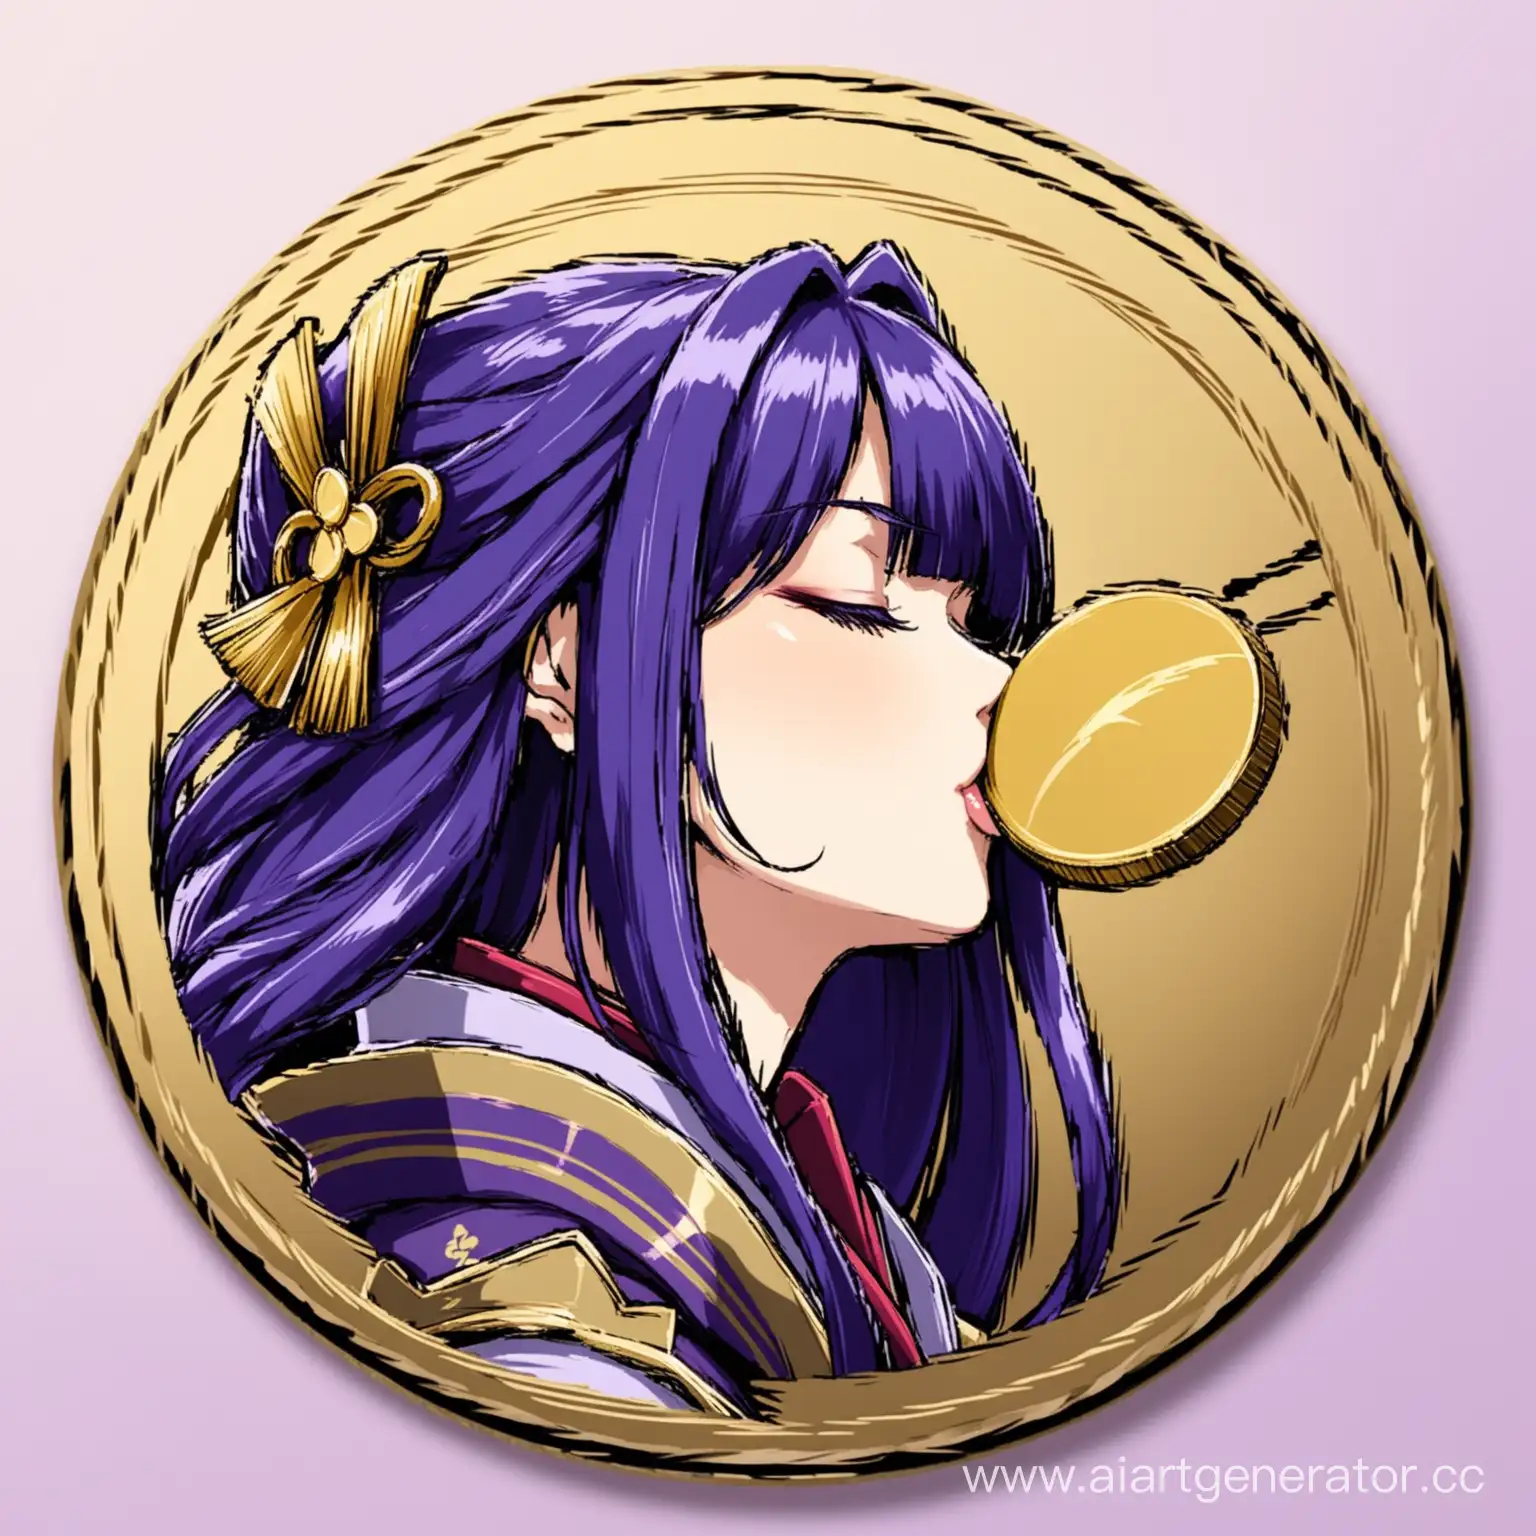 Raiden Shogun kiss coin
